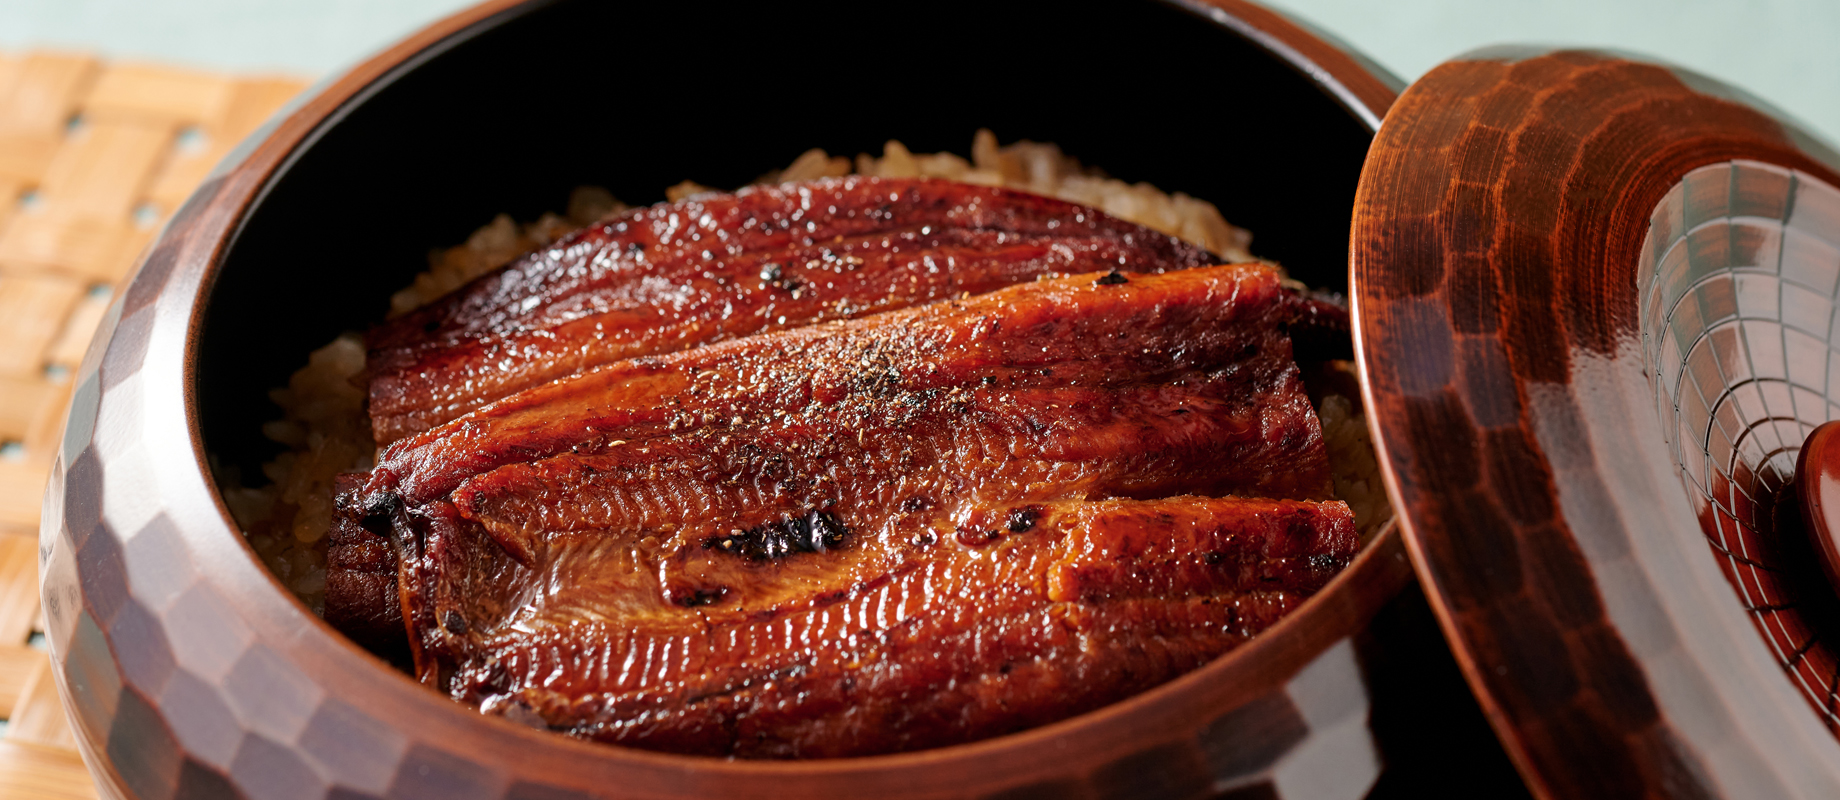 鹿児島県産の鰻をまるごと一尾贅沢に使用。ふっくら柔らかく、見た目にも豪華な炊き上がり。